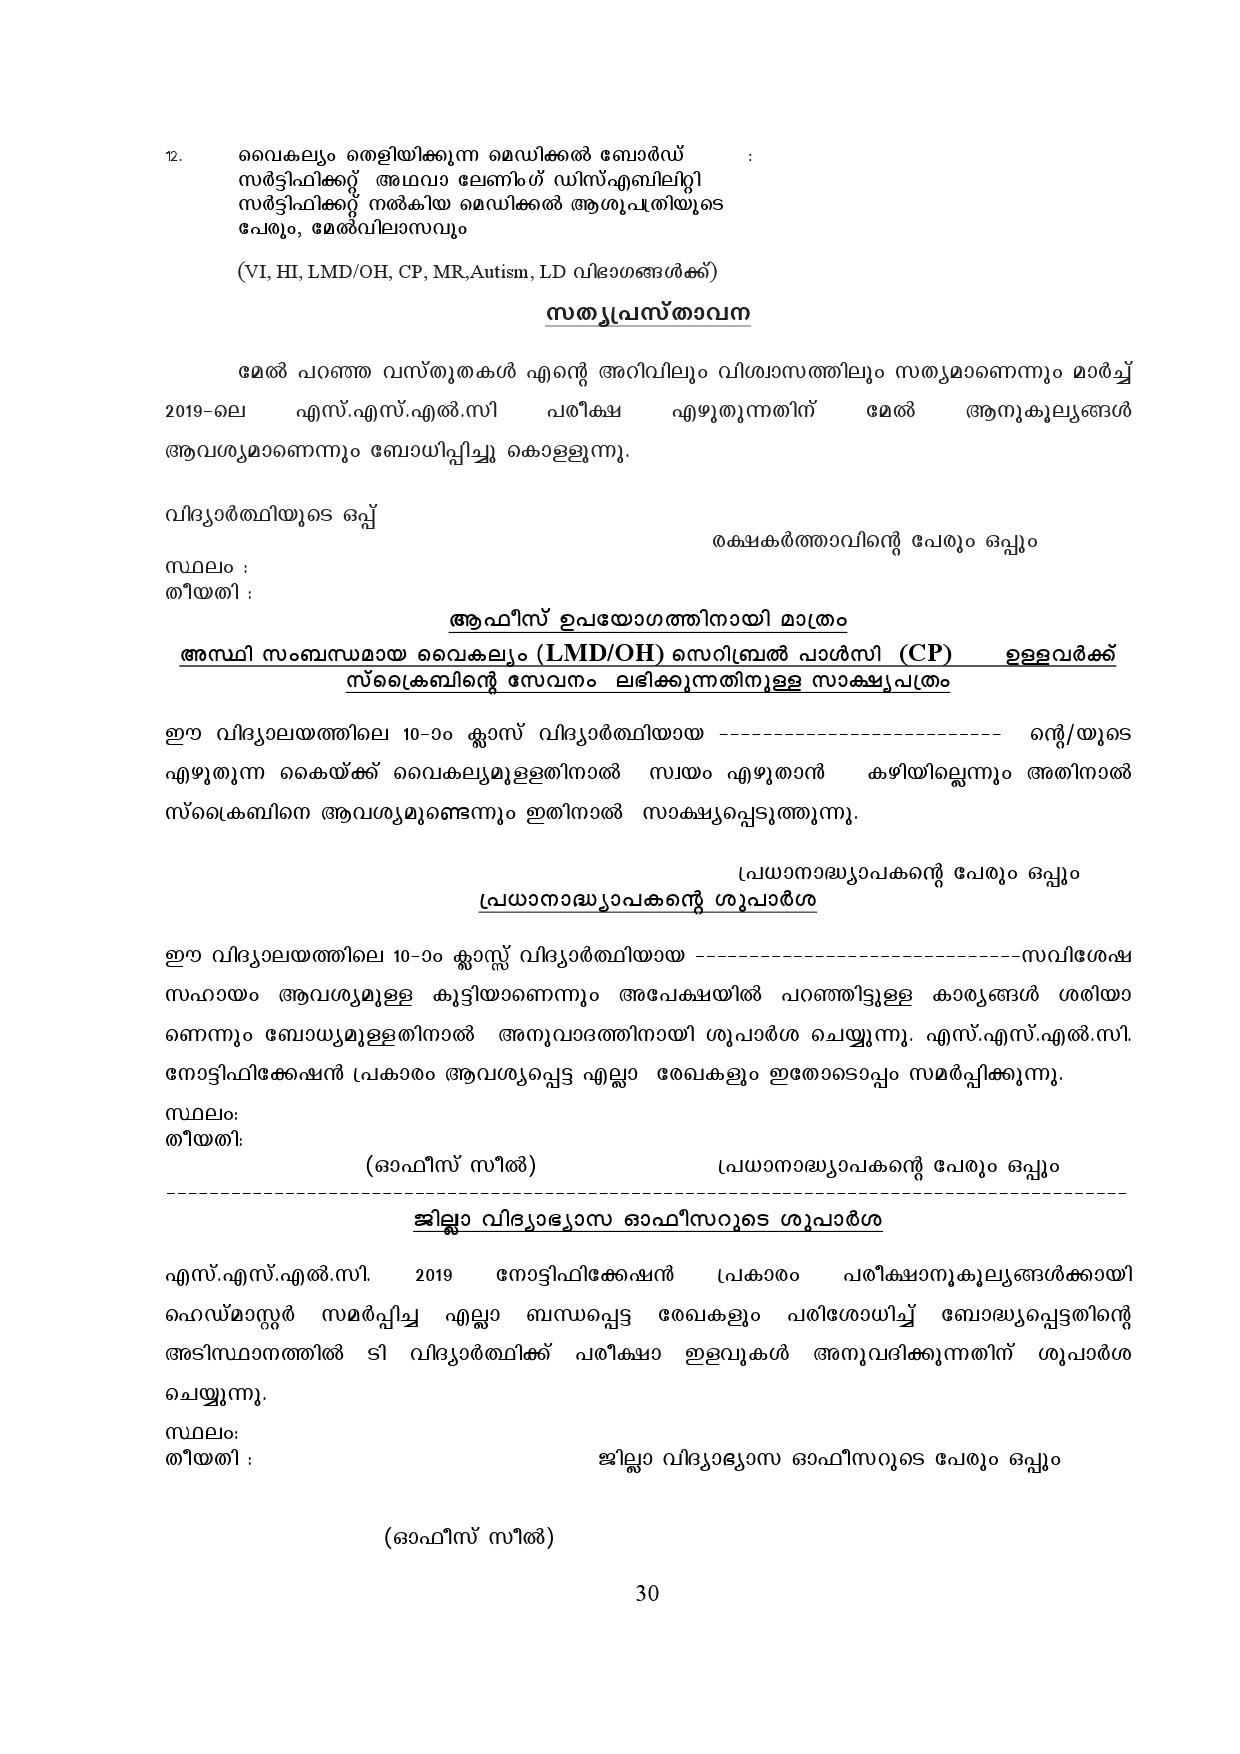 Kerala SSLC Exam Result 2019 - Notification Image 30